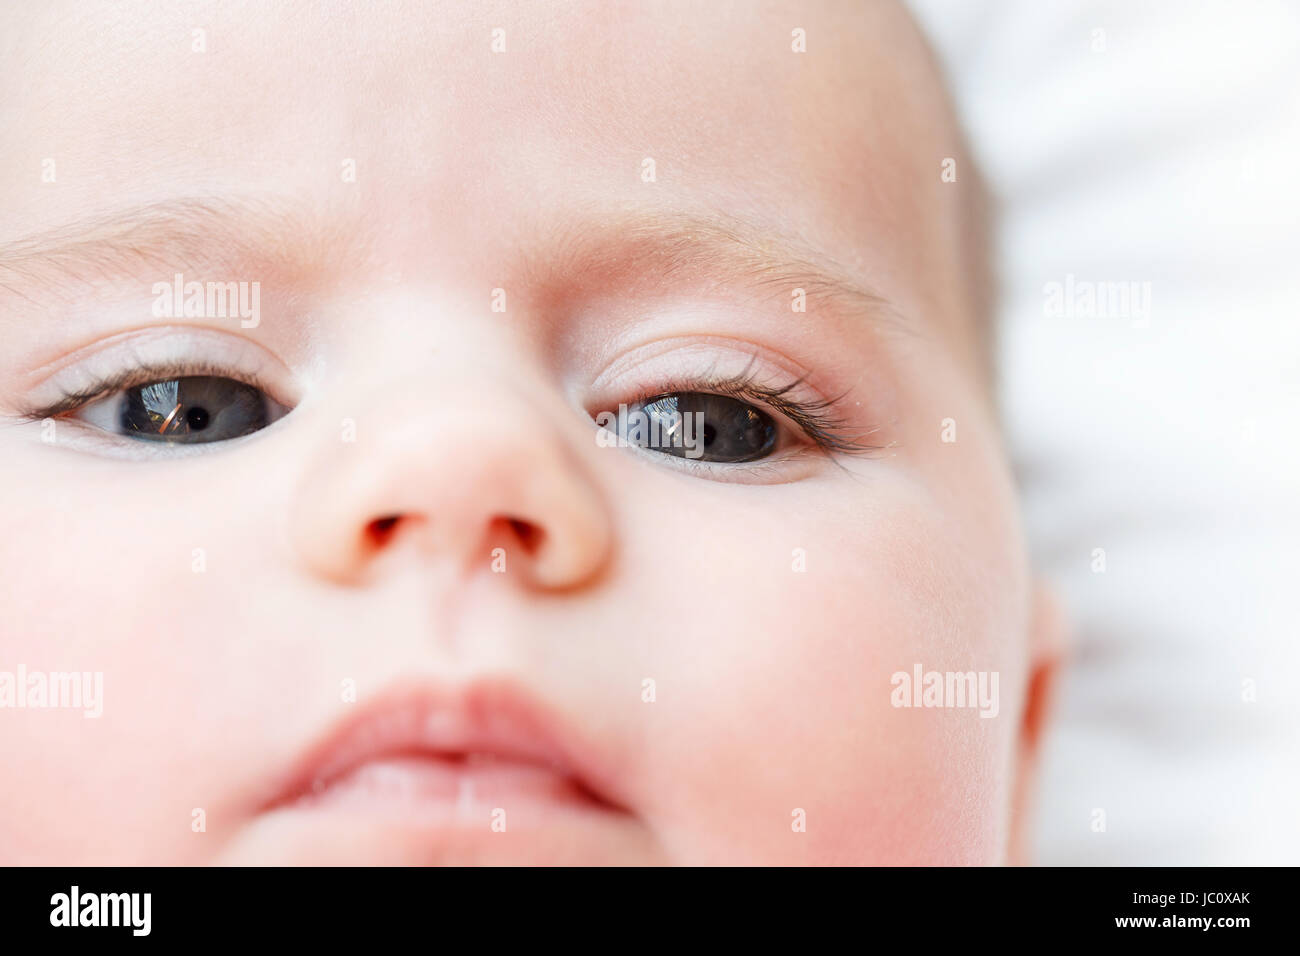 Macro di adorabile bambina occhio con messa a fuoco poco profonda Foto Stock